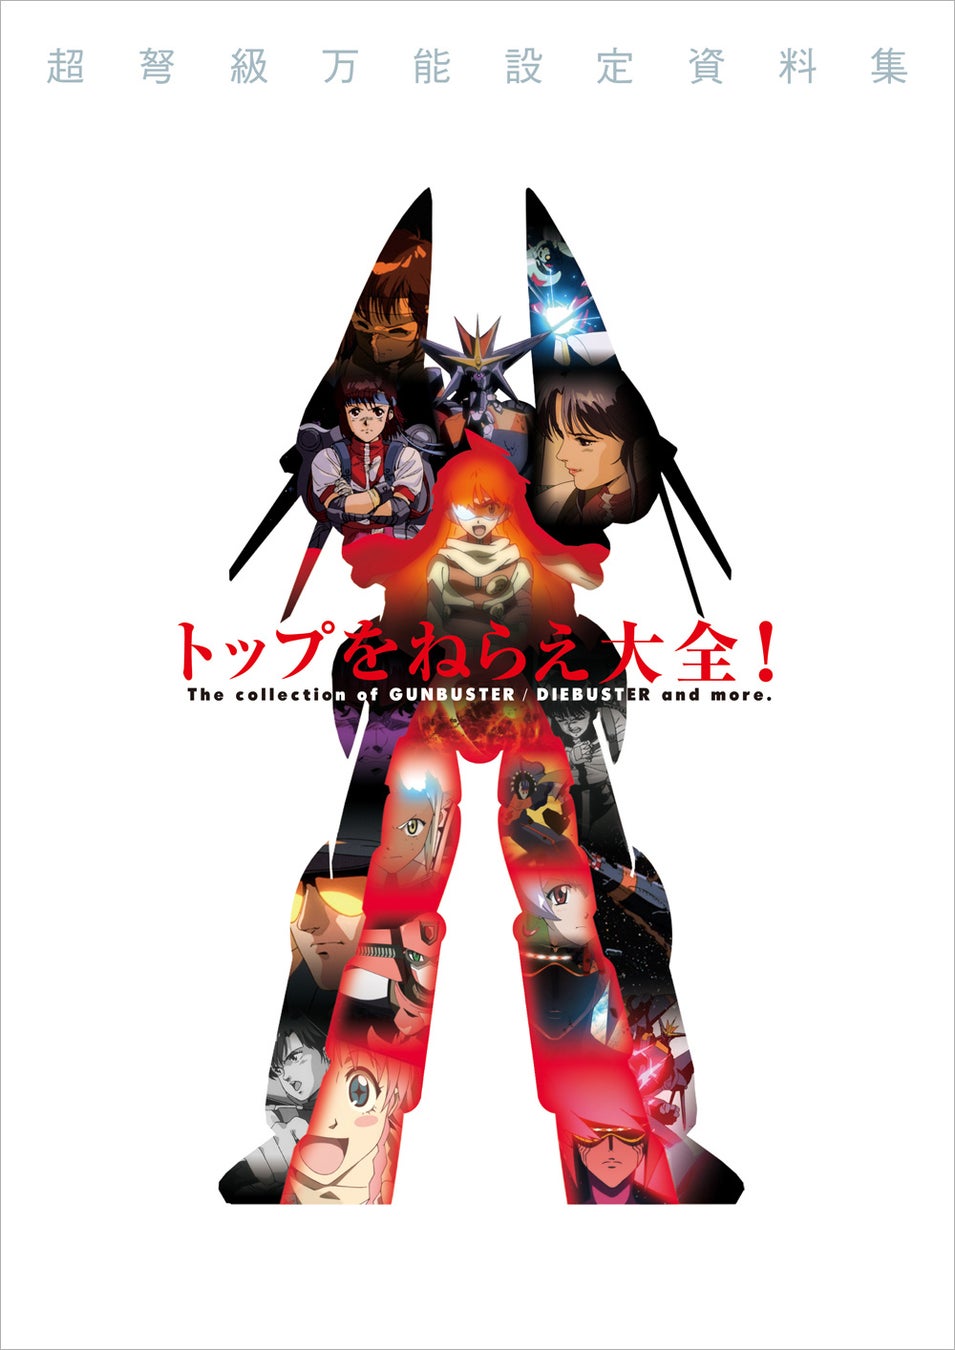 ＜コンテンツシードより、『Fate/Grand Carnival』ミニアクリルアート Rock Band ver.が新発売＞Animo（アニモ）にて2月4日より予約販売開始！